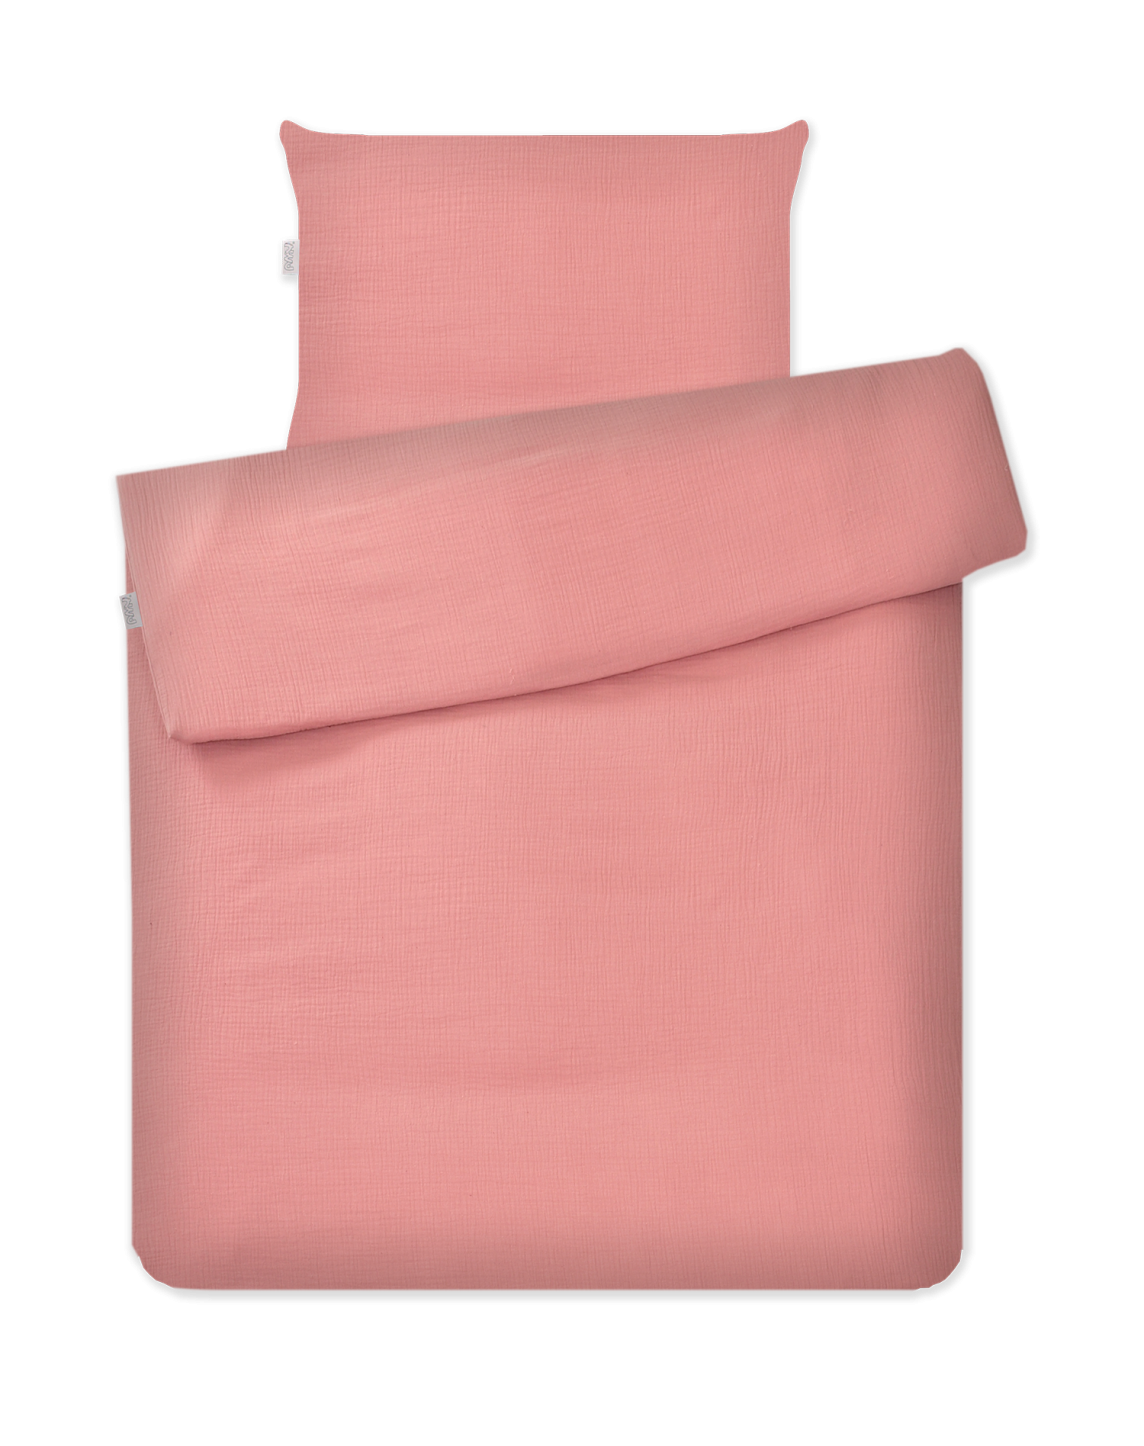 婴儿床床上用品 2 元素艾米拼图平纹细布粉红色